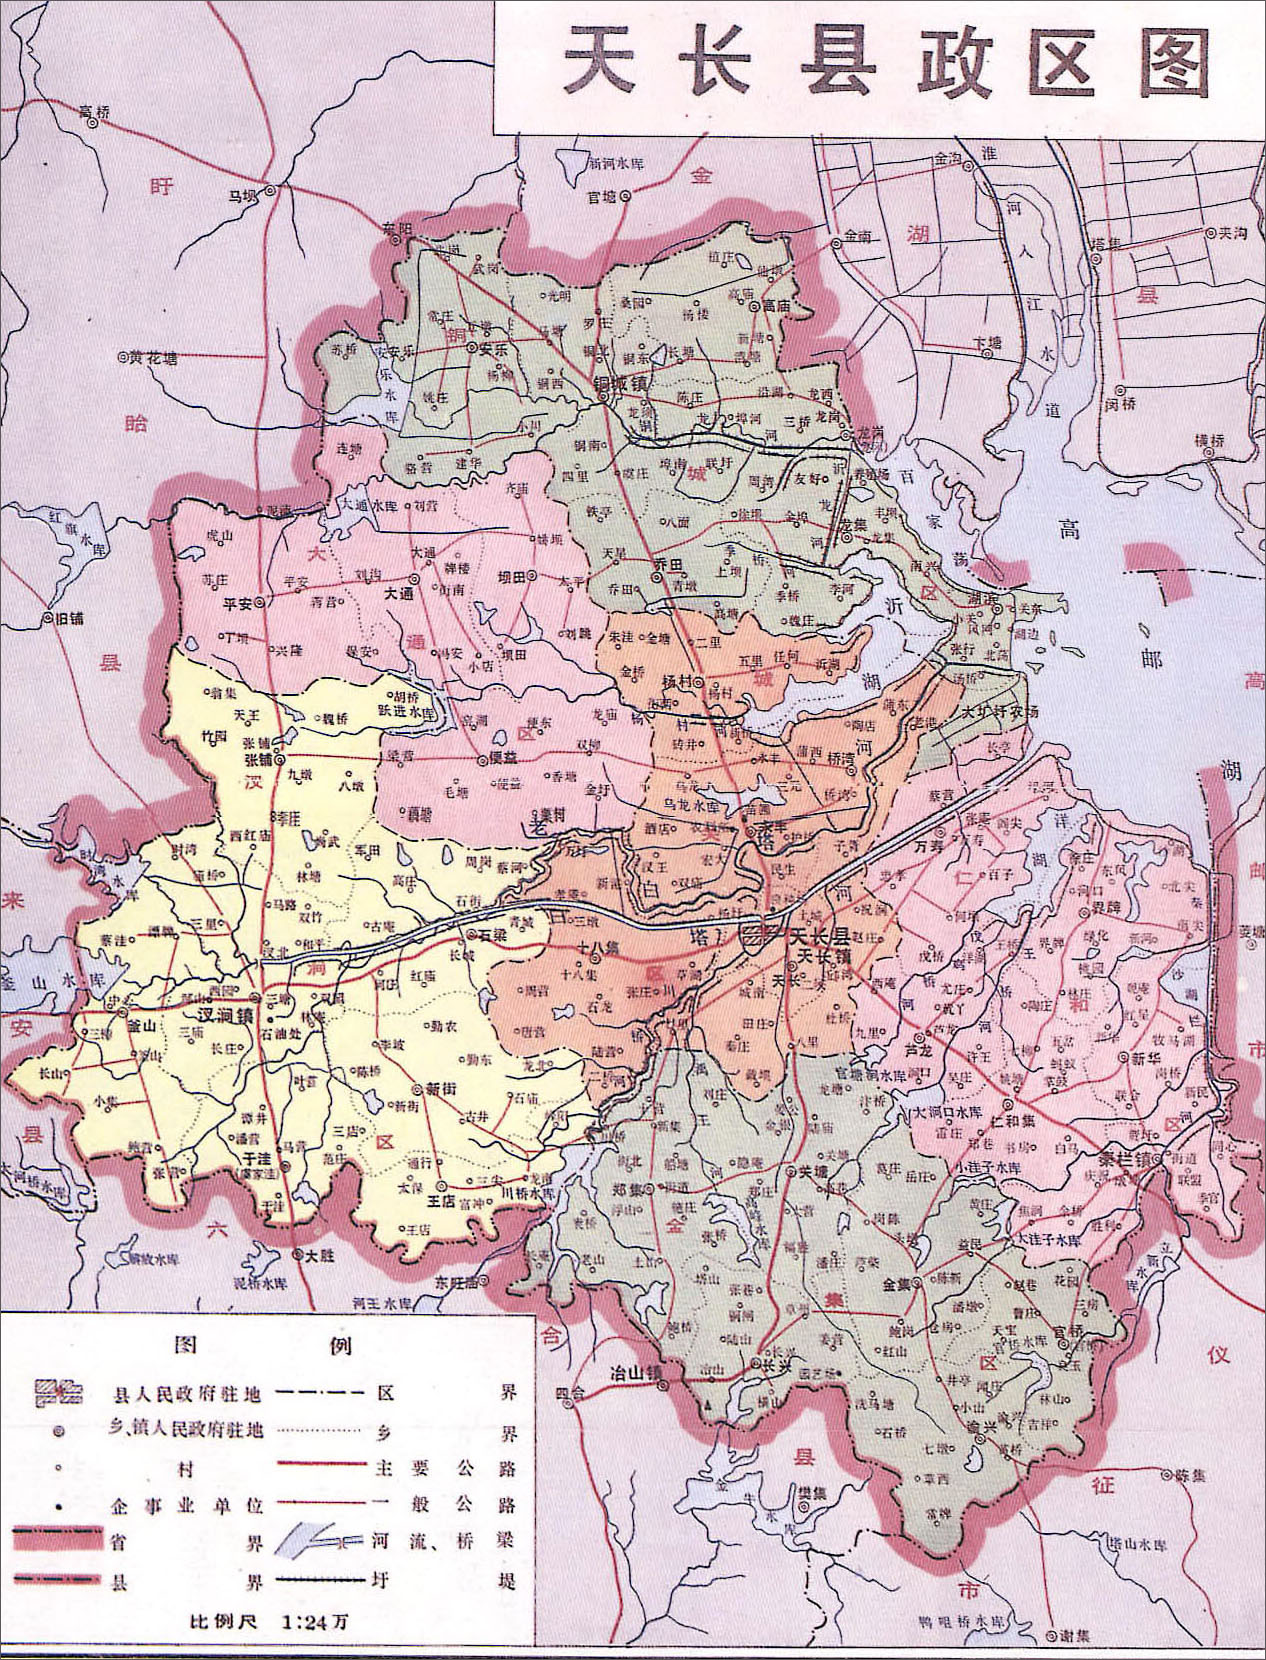 中国地图 安徽 滁州市 >> 天长县政区图  相关链接: 合肥市  芜湖市图片